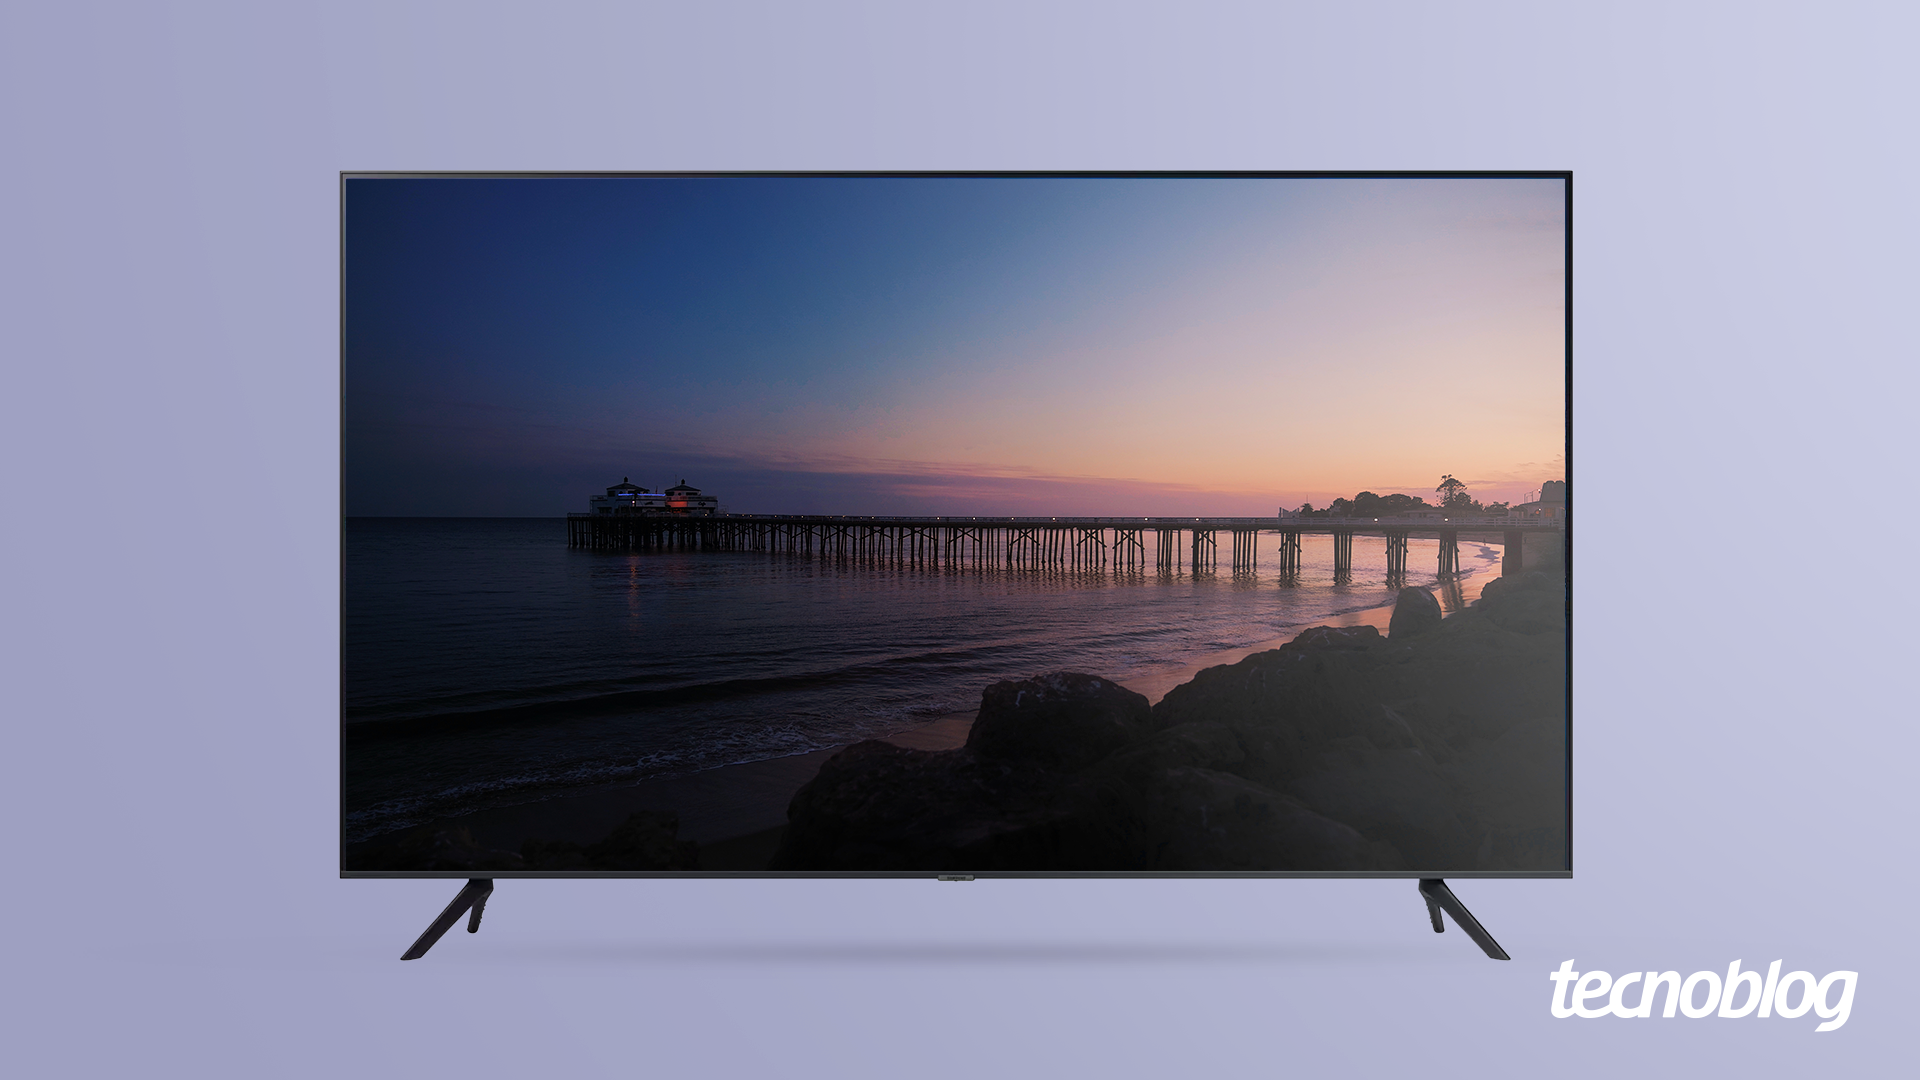 TV 4K Samsung AU7700: bordas finas, conectividade e preço alto